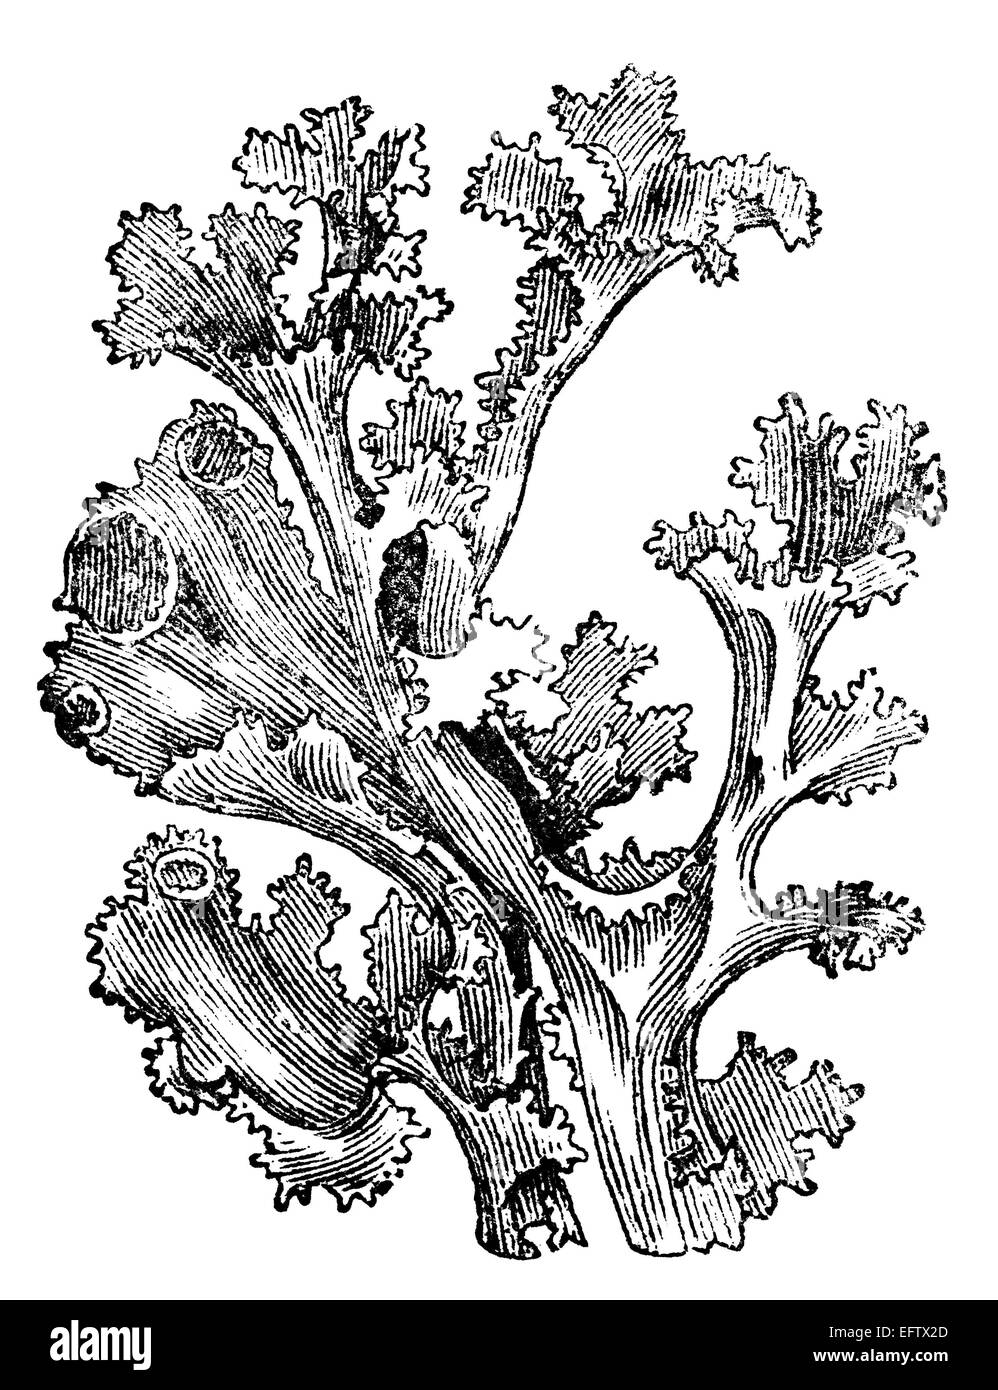 Botanical illustration Mosses  Lizzie Harper